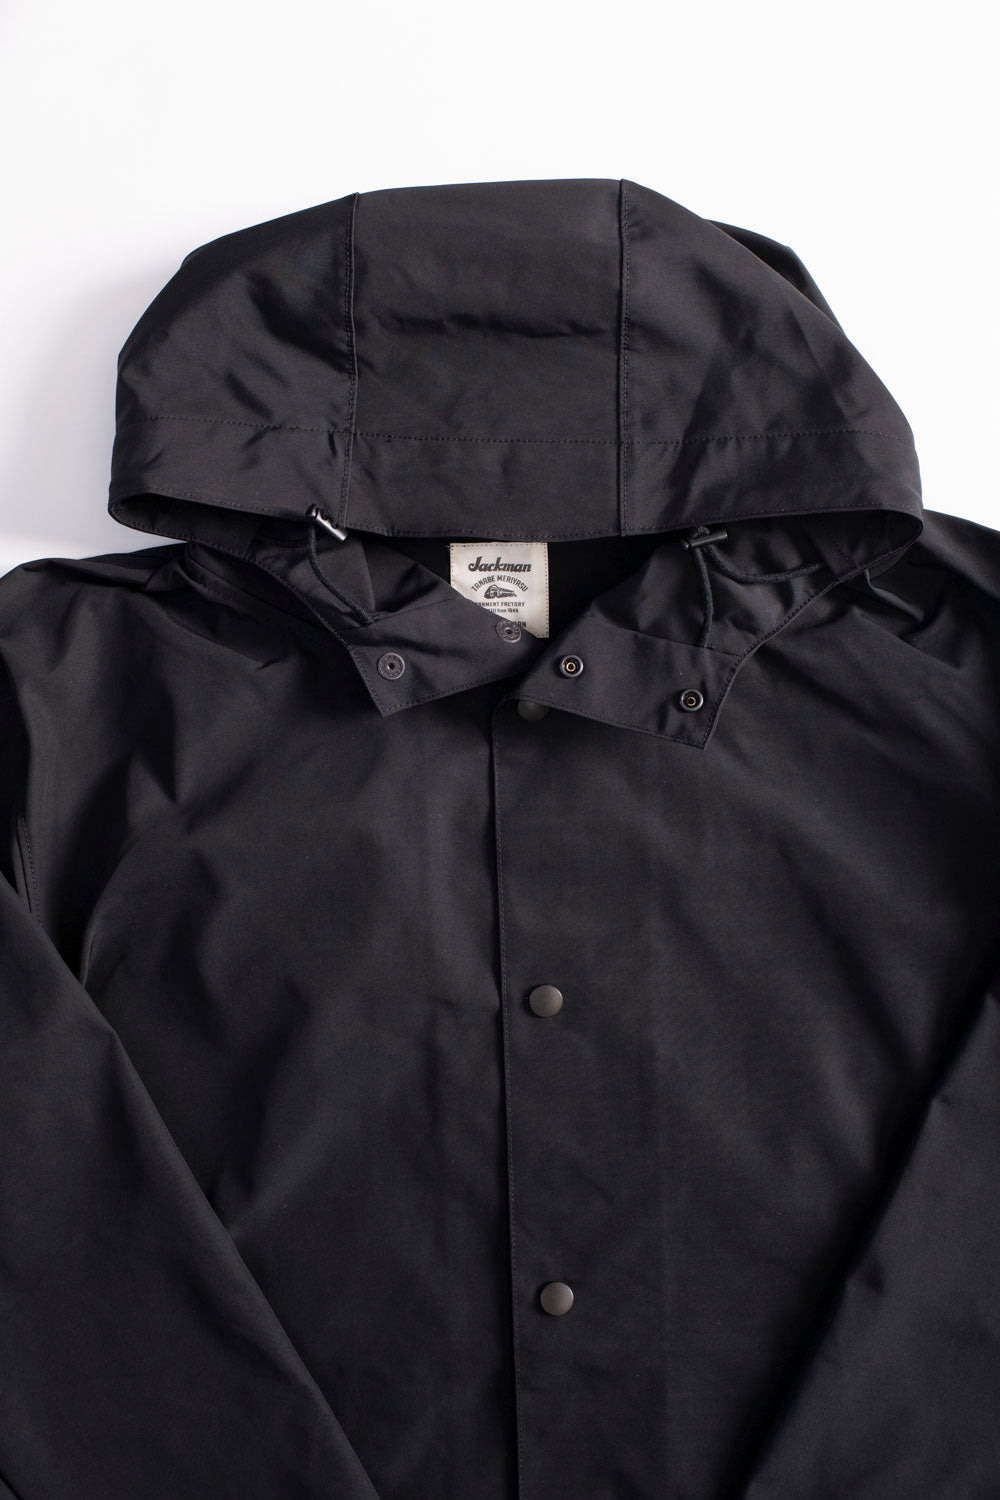 OX Hoodie Coat - 07 Black